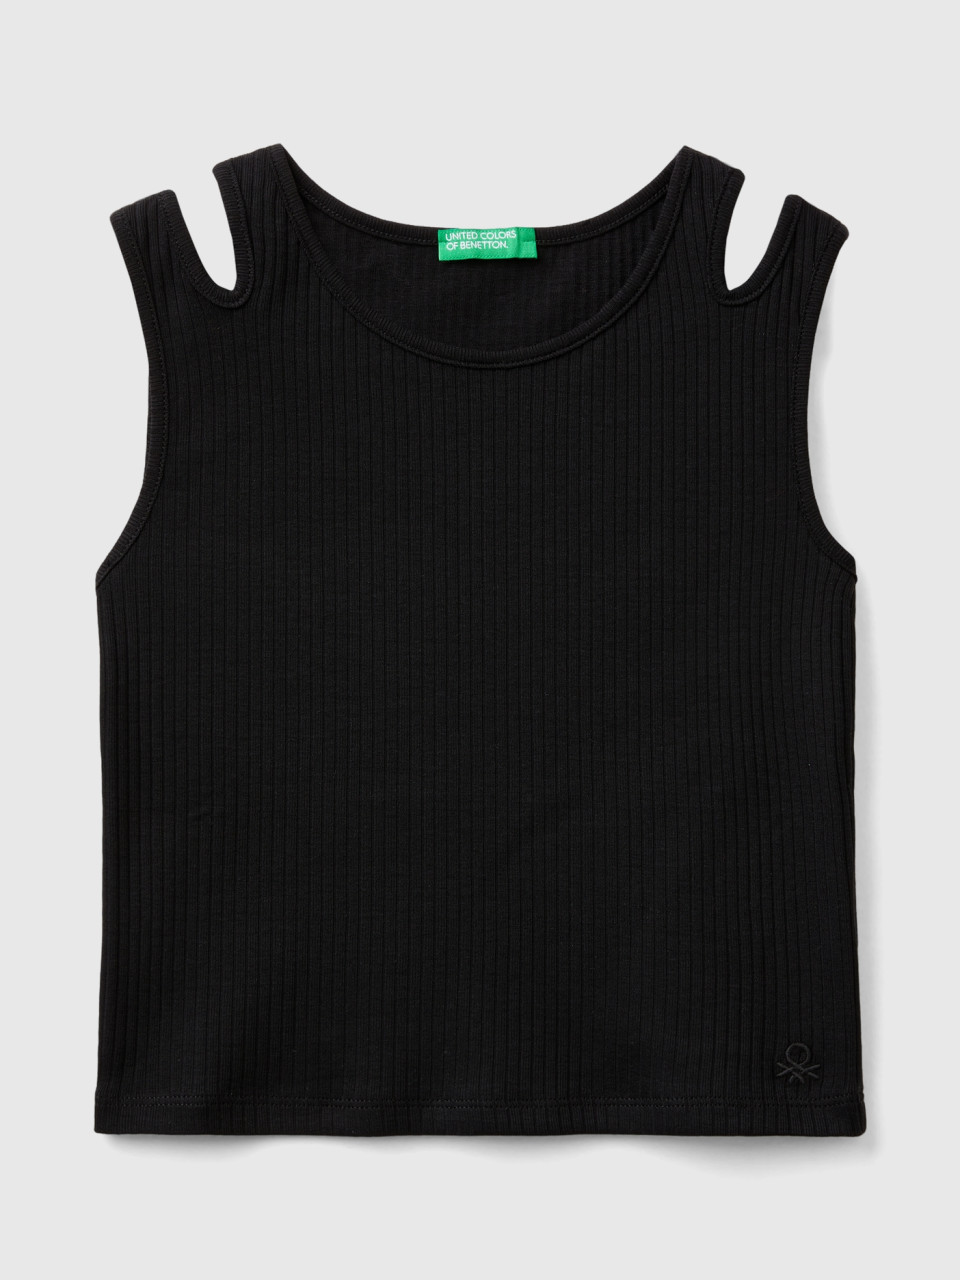 Benetton, Camiseta De Tirantes Acanalada Con Troquelado, Negro, Niños